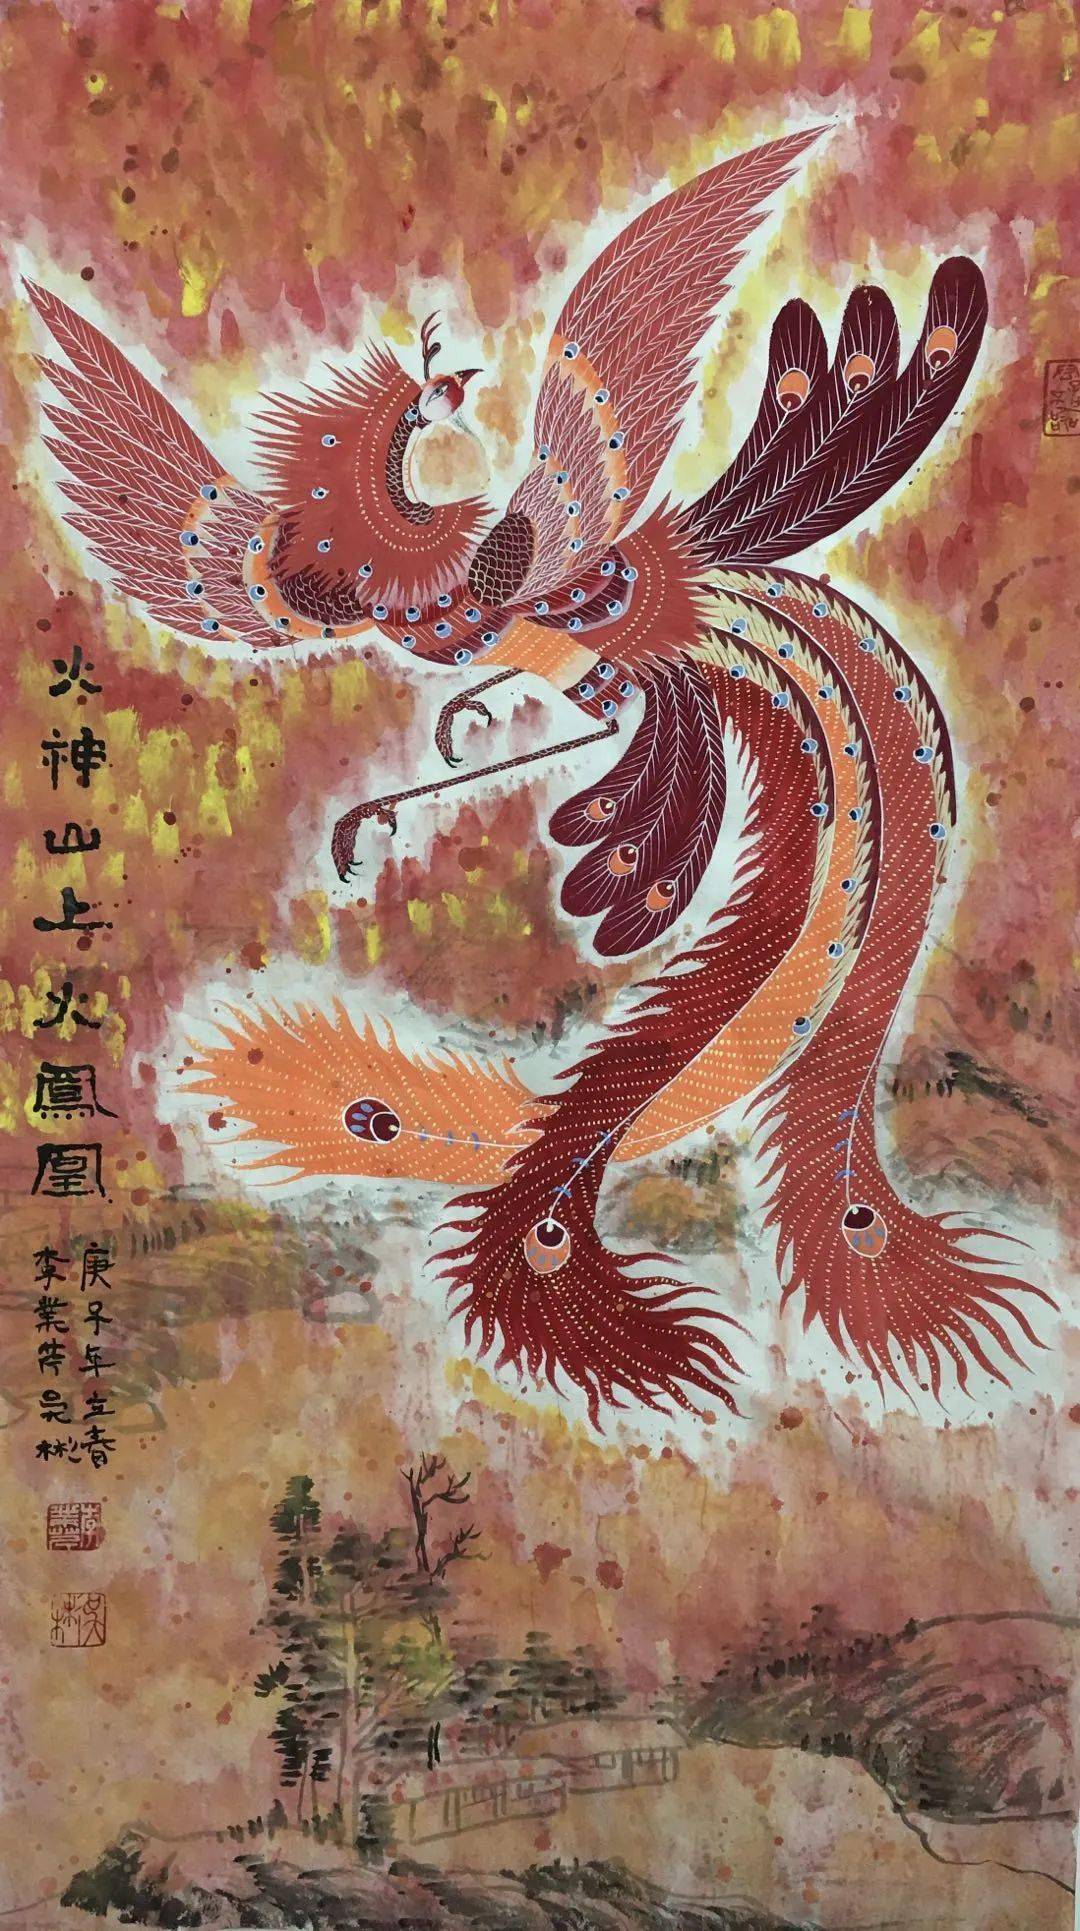 3月4日上午,华亭凤鸣——女画家工笔重彩画展在位于松江仓城历史